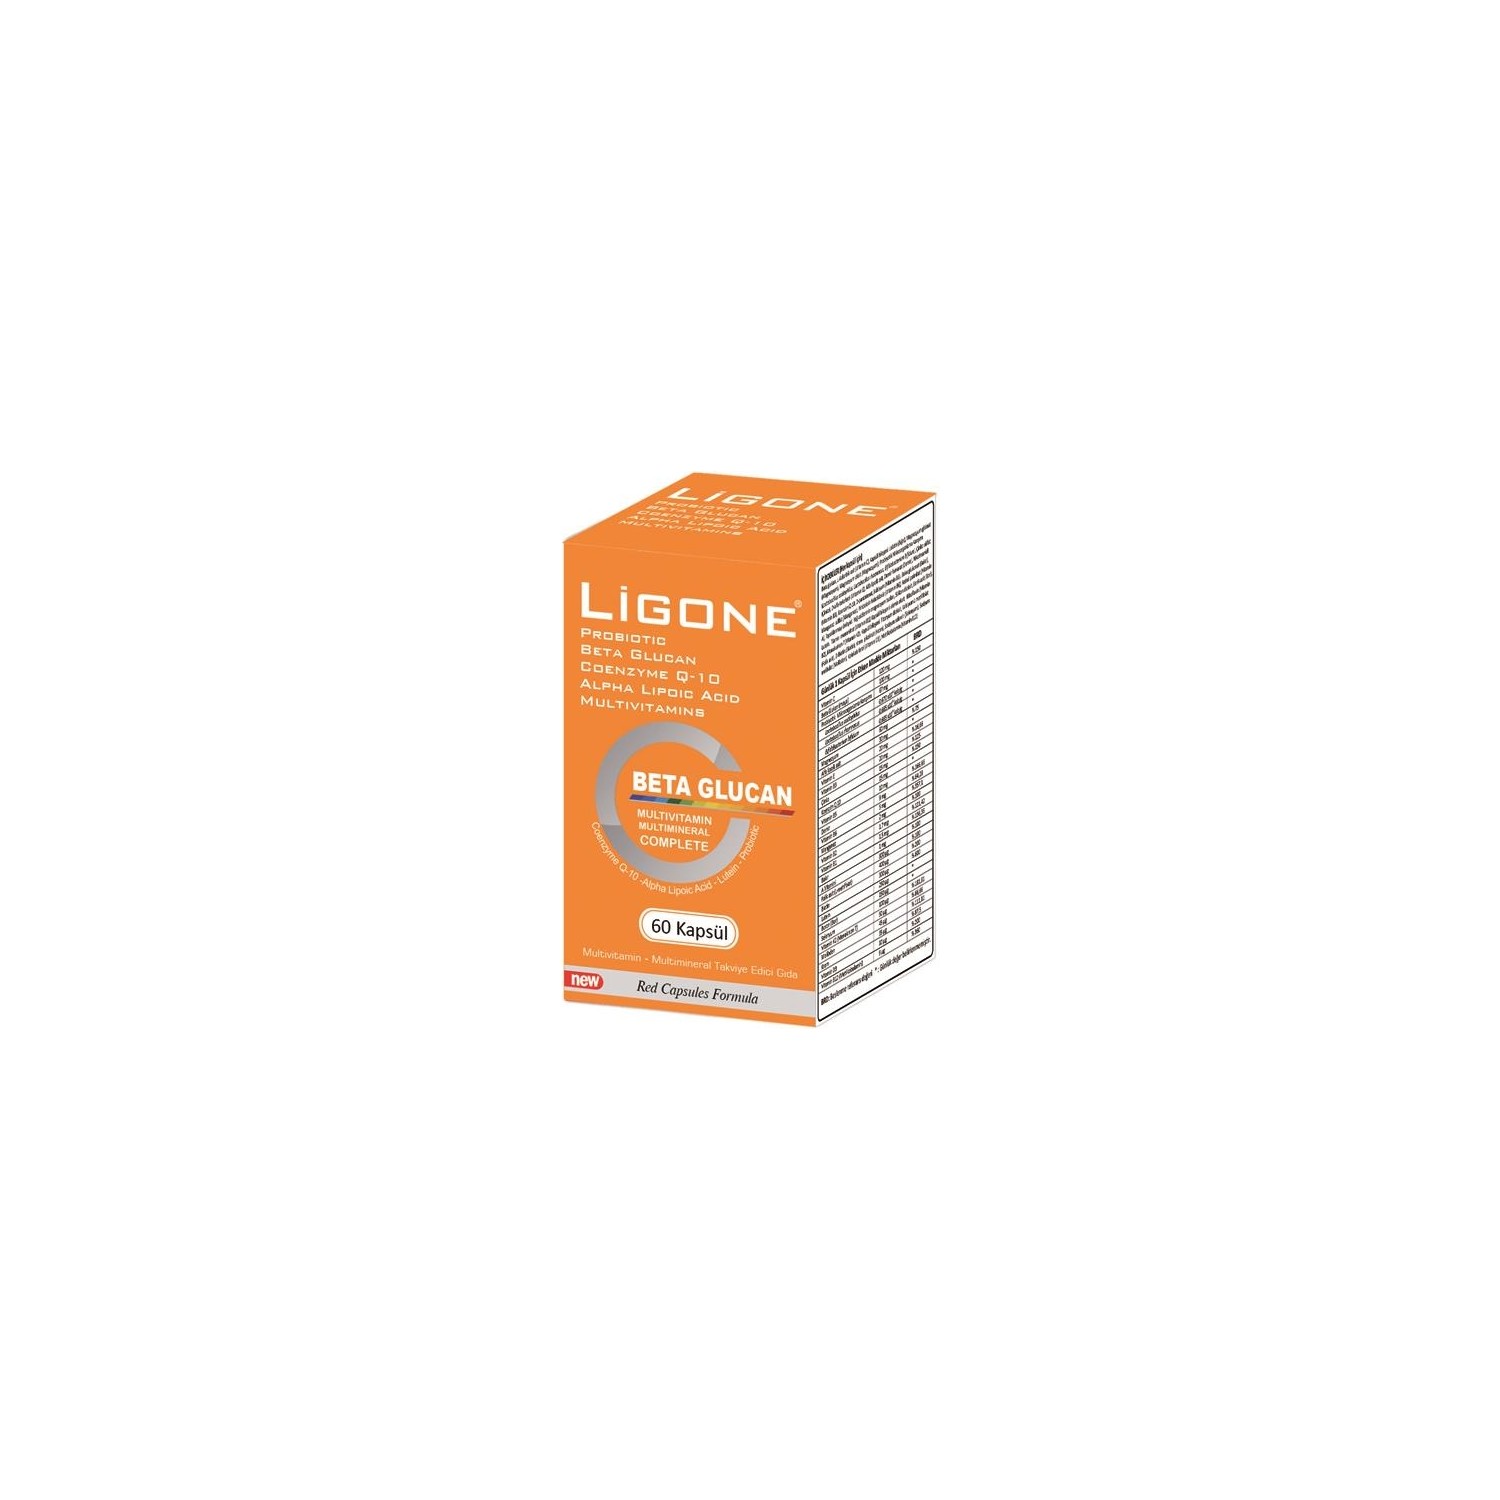 Пищевая добавка Newdrog Ligone Beta Glucan, 60 капсул